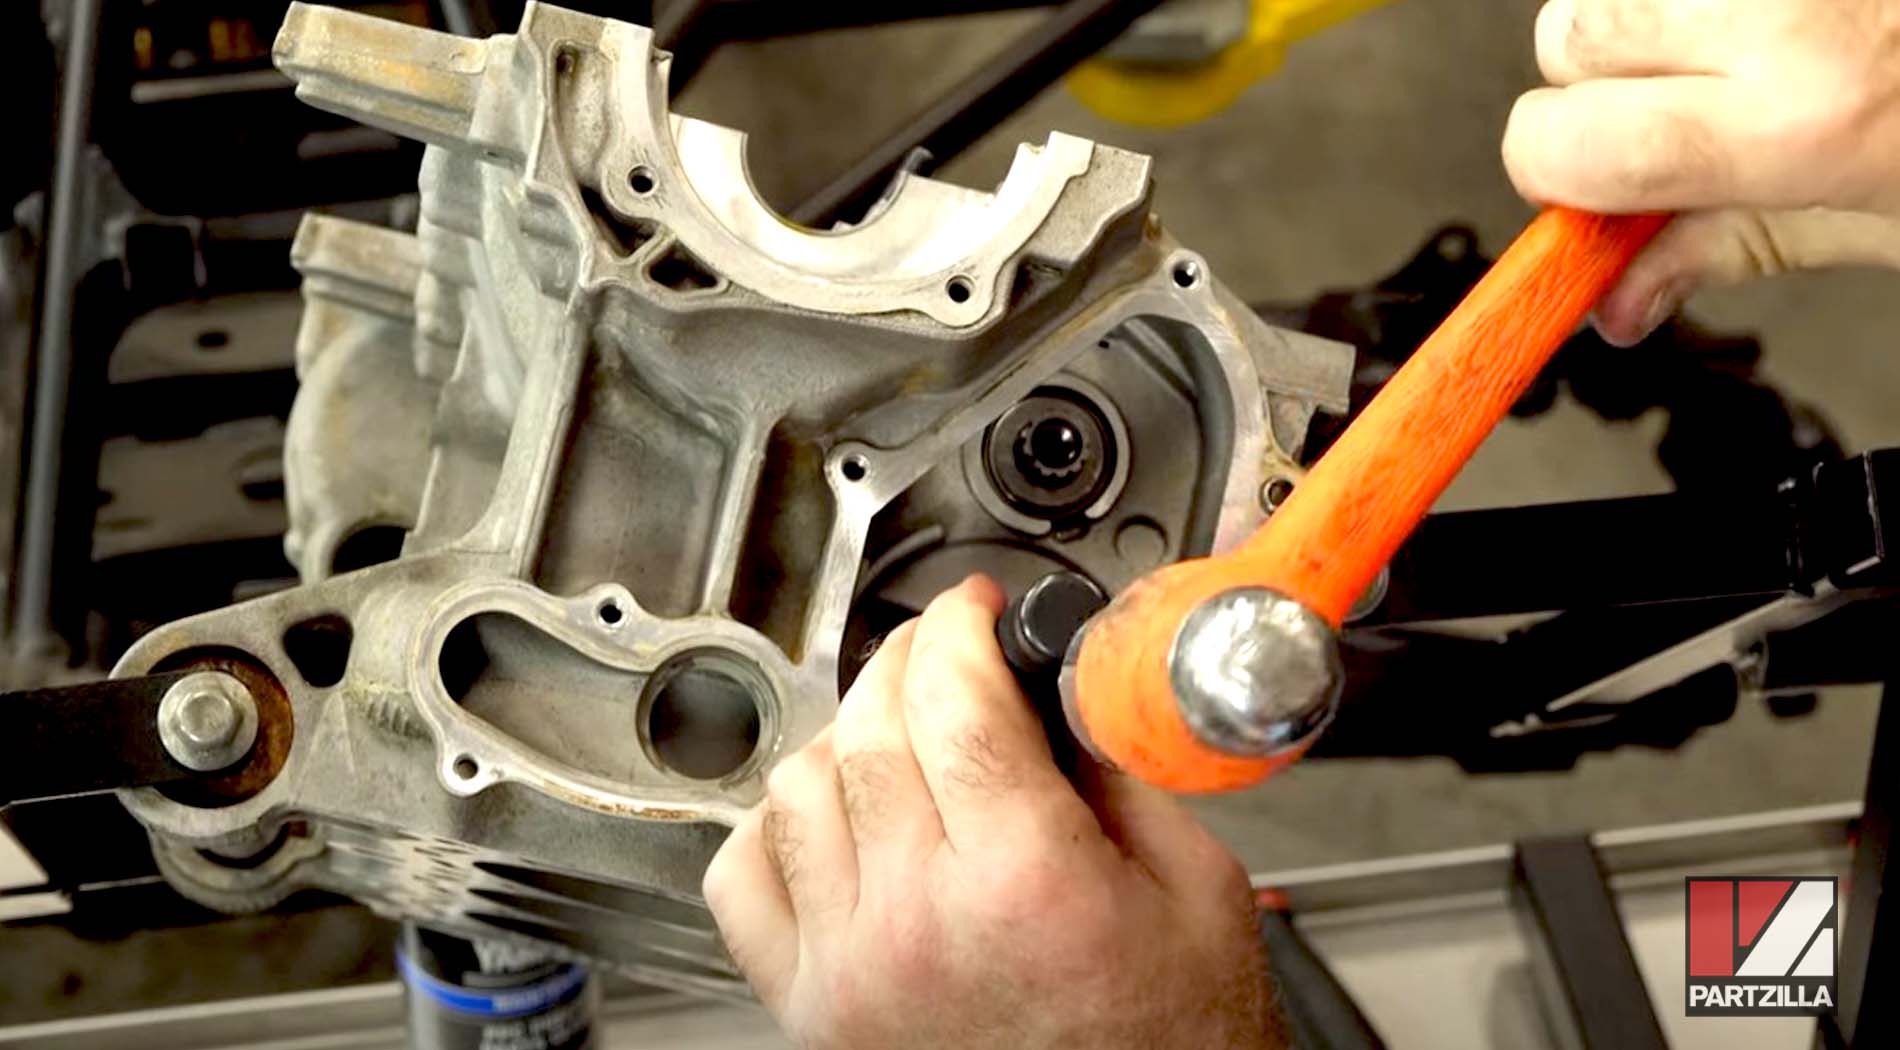 Yamaha side-by-side engine rebuild turbo upgrade